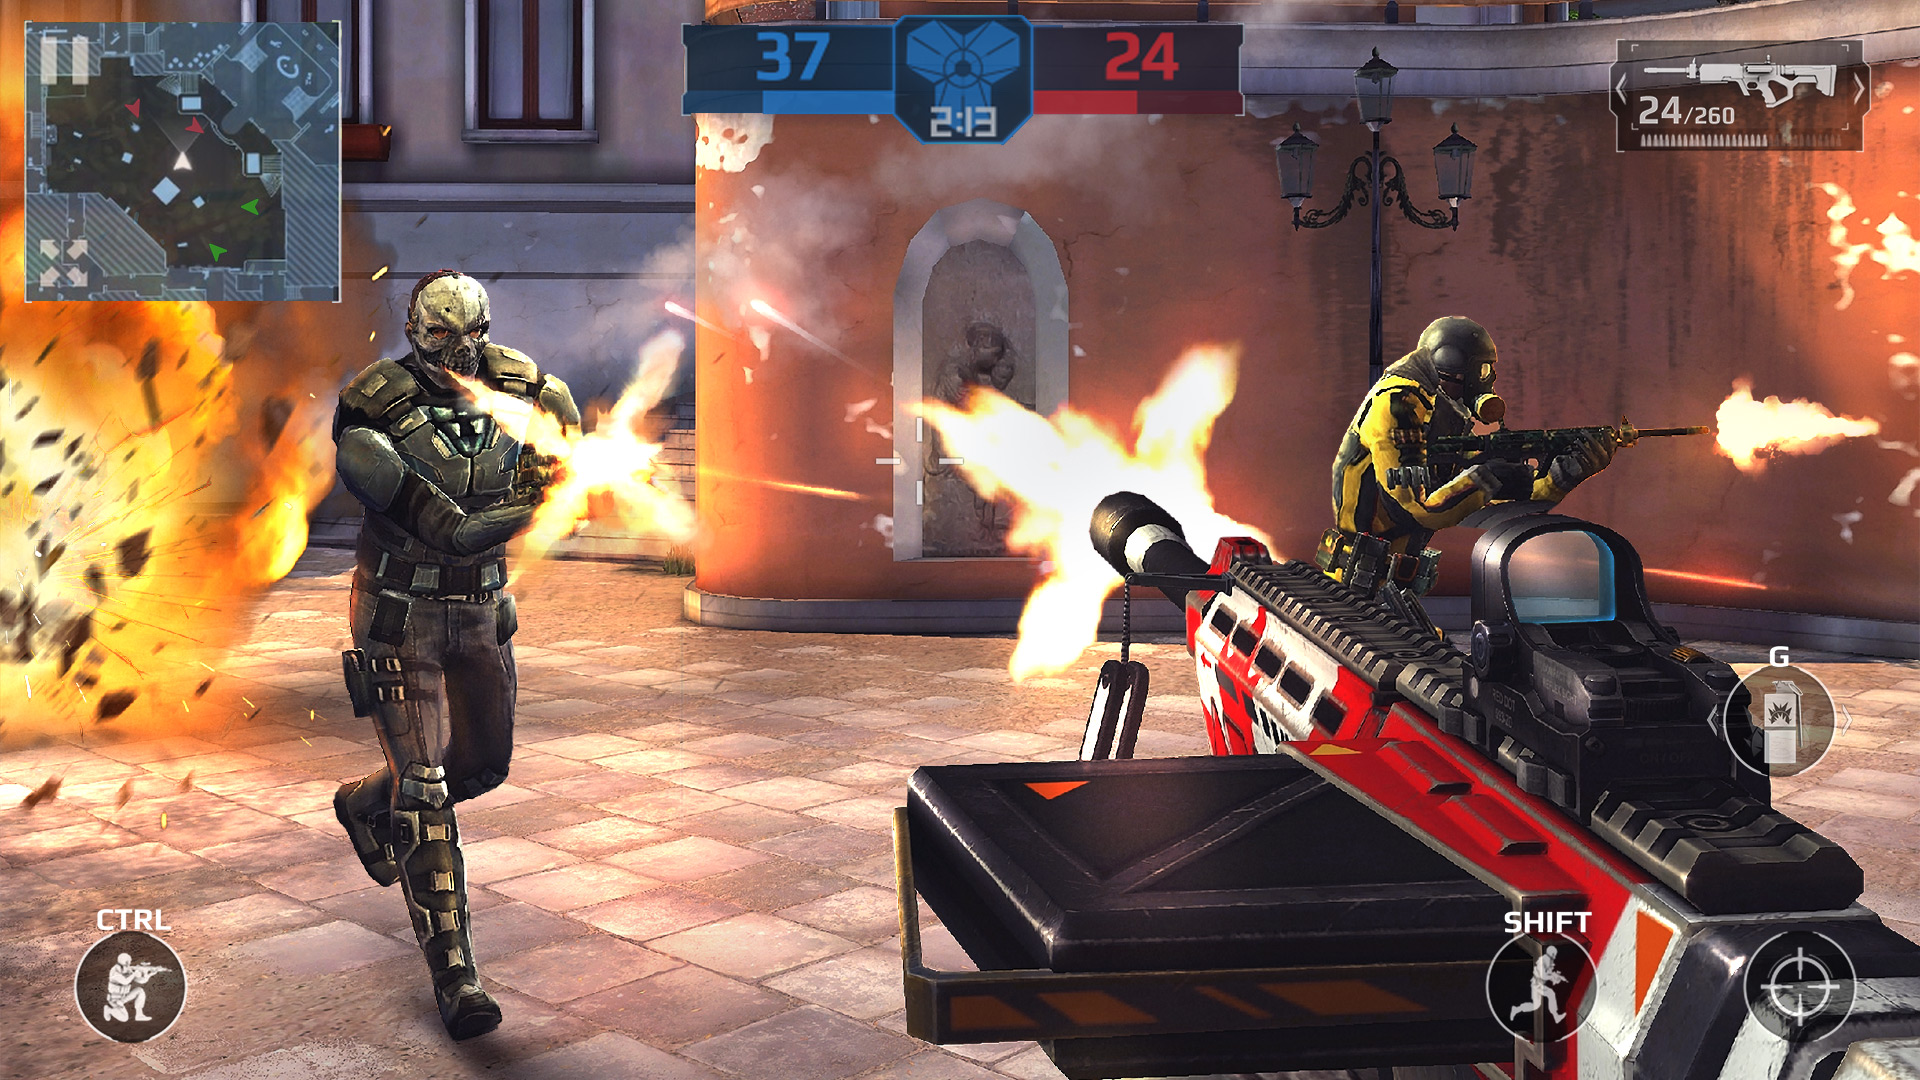 Modern Combat 5 screenshot